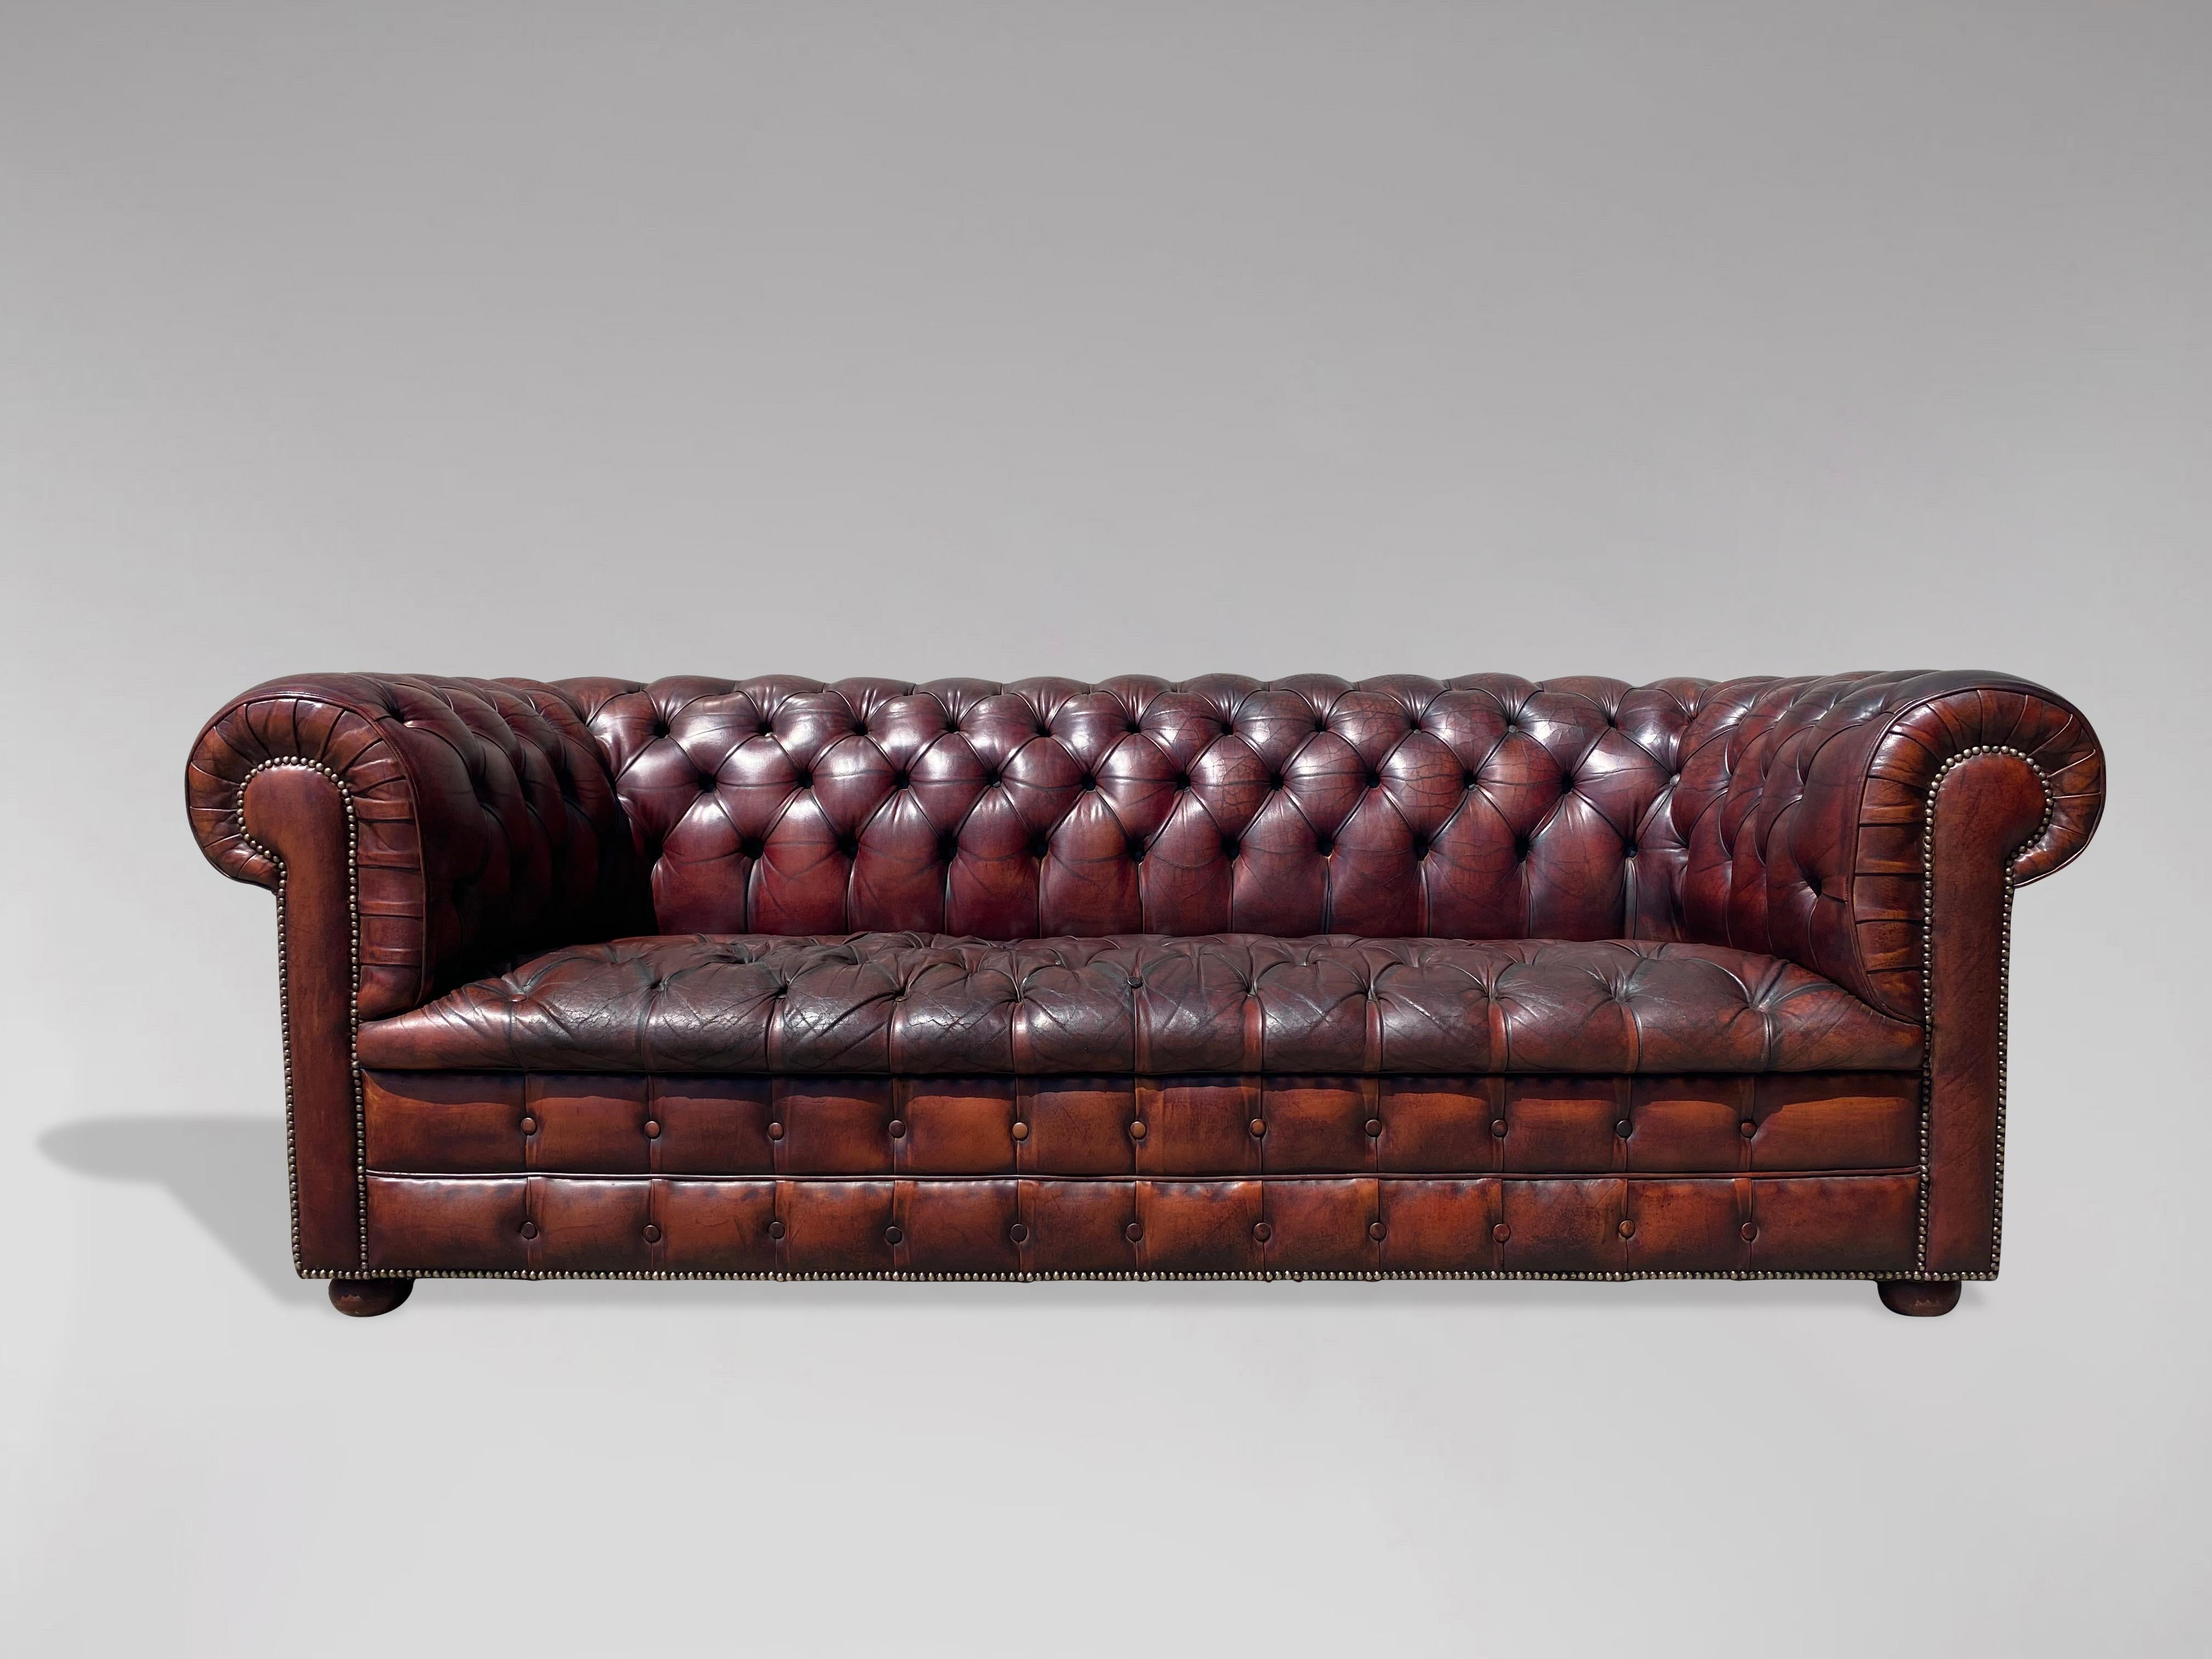 Canapé Chesterfield en cuir bordeaux à trois places du début du 20e siècle. La peau d'origine en cuir brun rouge a été nettoyée et polie, ce qui donne une sensation de douceur et de somptuosité à ce cuir de qualité. Il est doté d'un siège